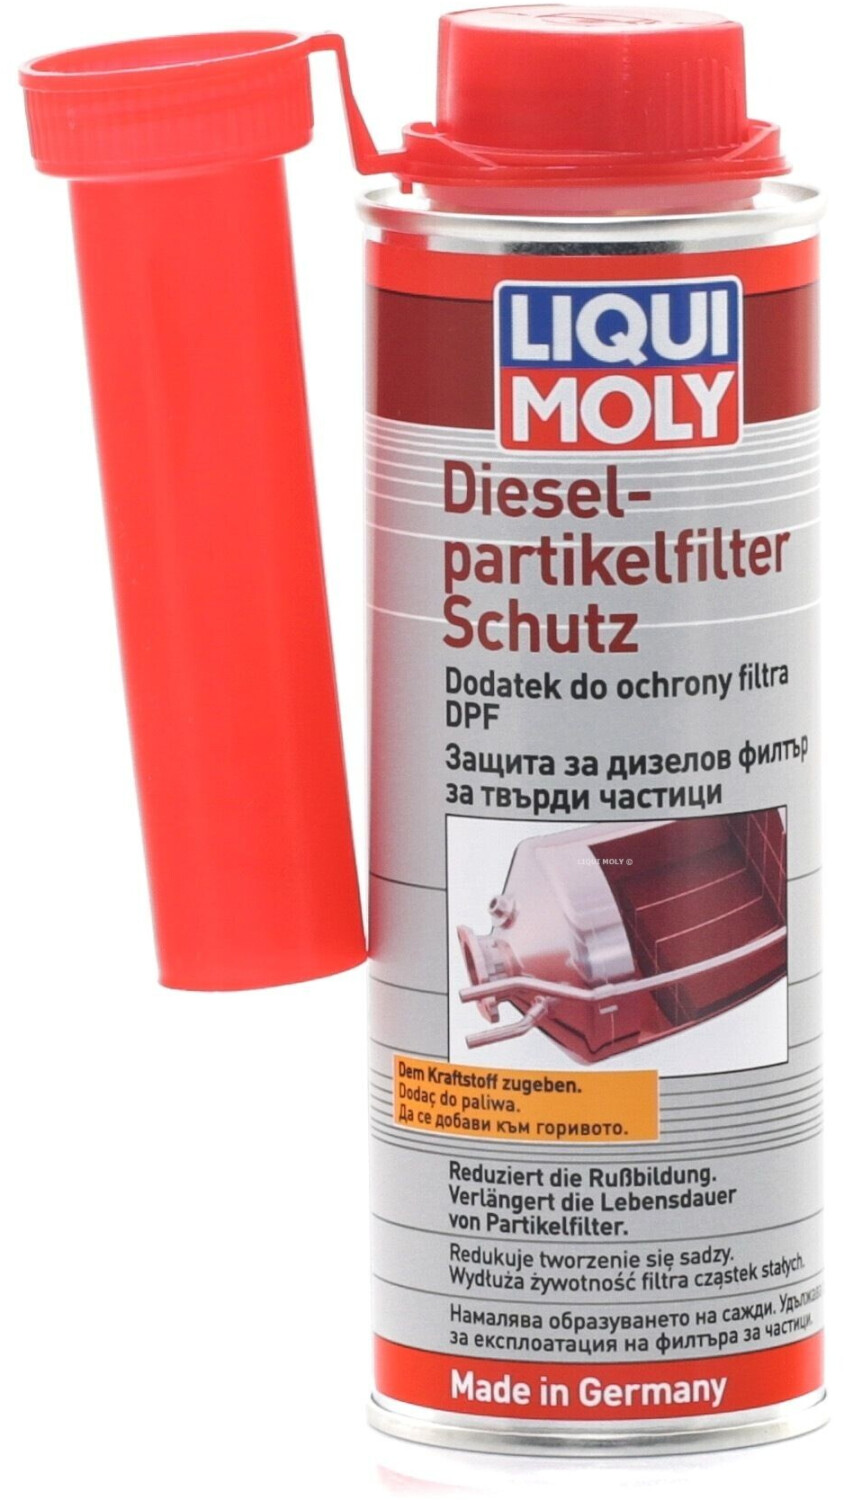 Liqui Moly 2650 Ruß Diesel Partikelfilter Schutz 250ml Additiv DPF